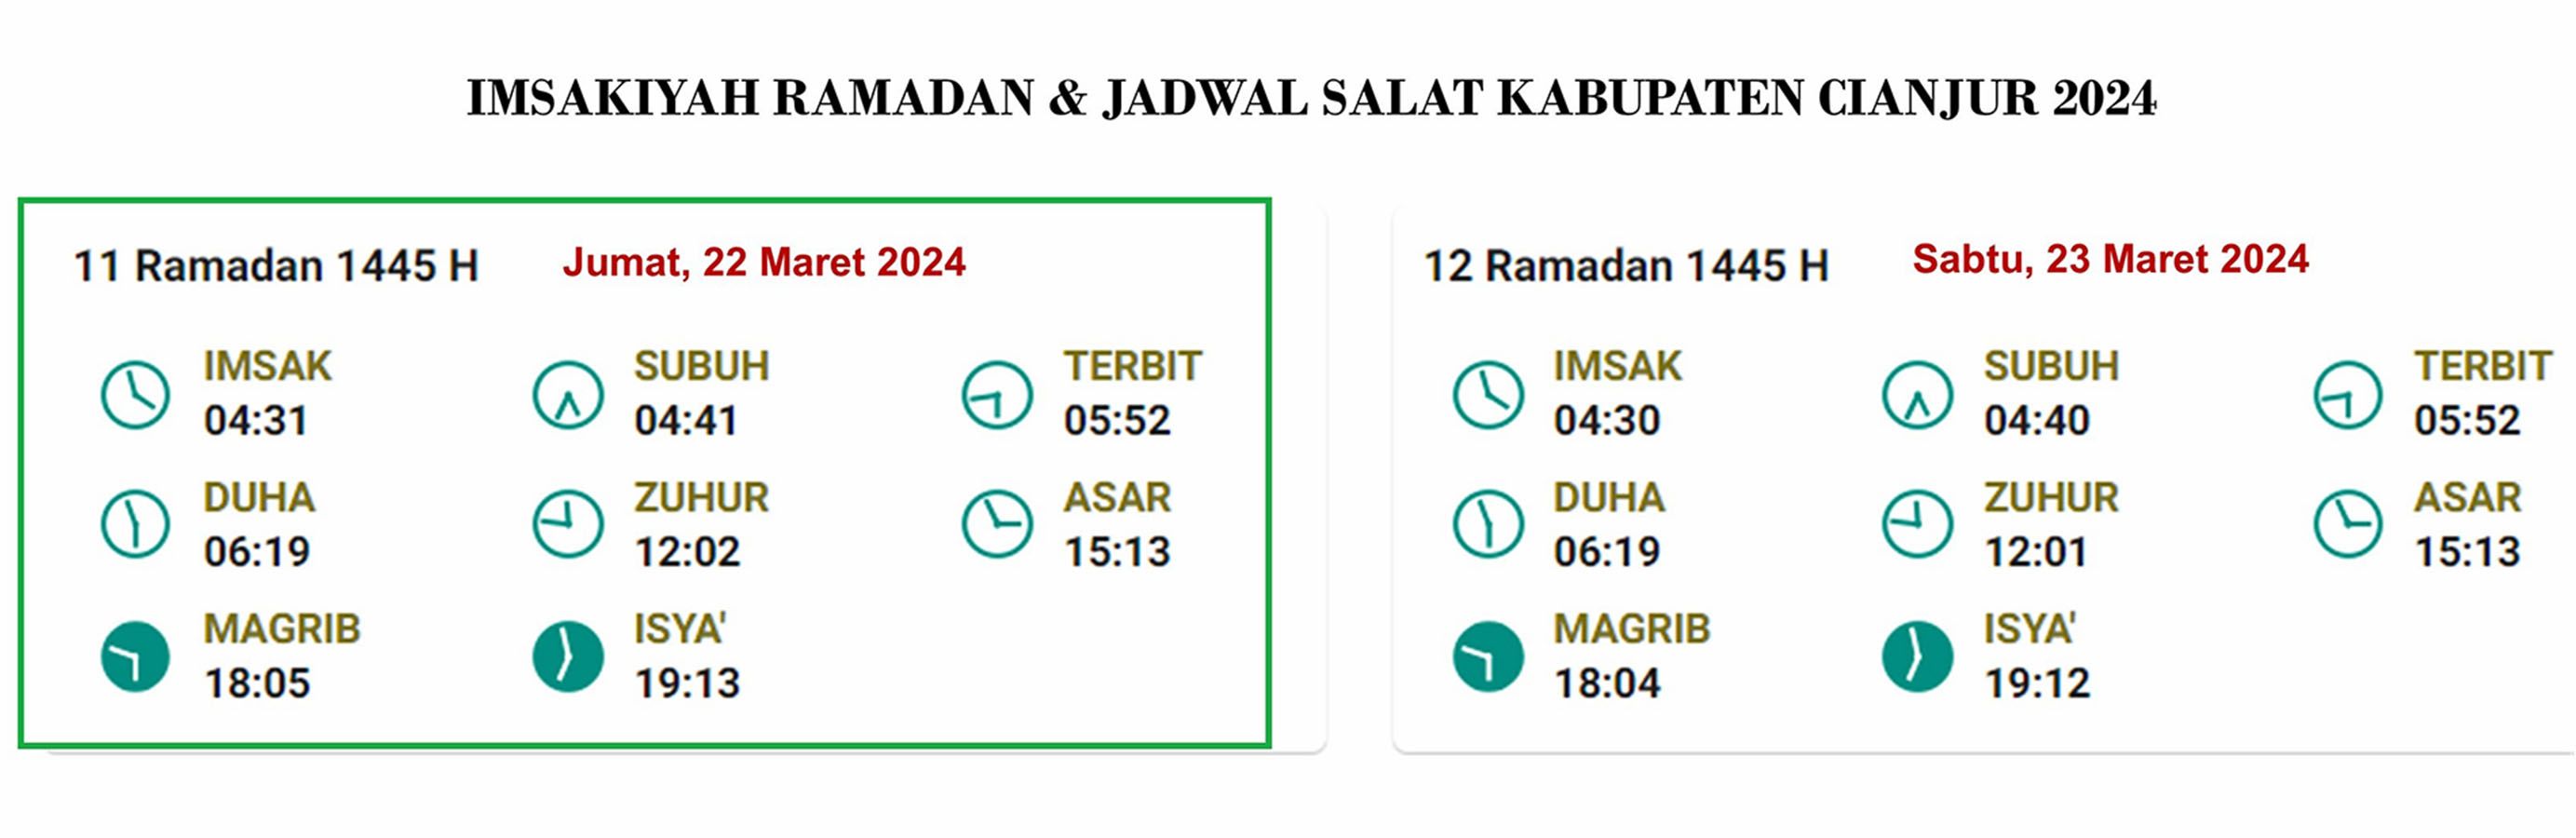 Cianjur,  Jadwal Imsakiyah dan Salat, Jumat, 22 Maret 2024 